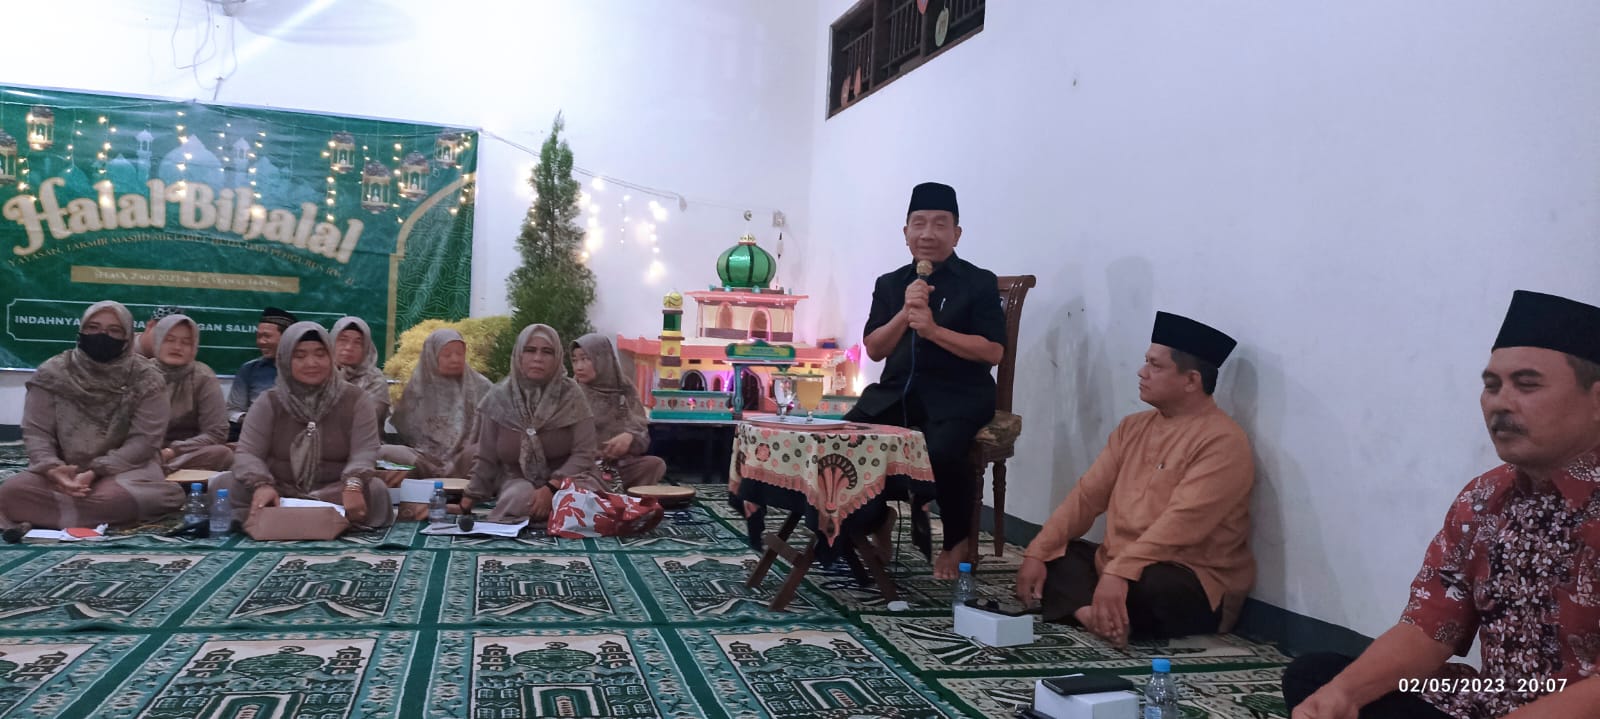 Anggota DPRD Kota Semarang Nunung Sriyanto sedang memberikan sambutan di acara warga Tlogosari Kulon Pedurungan Kota Semarang belum lama ini.